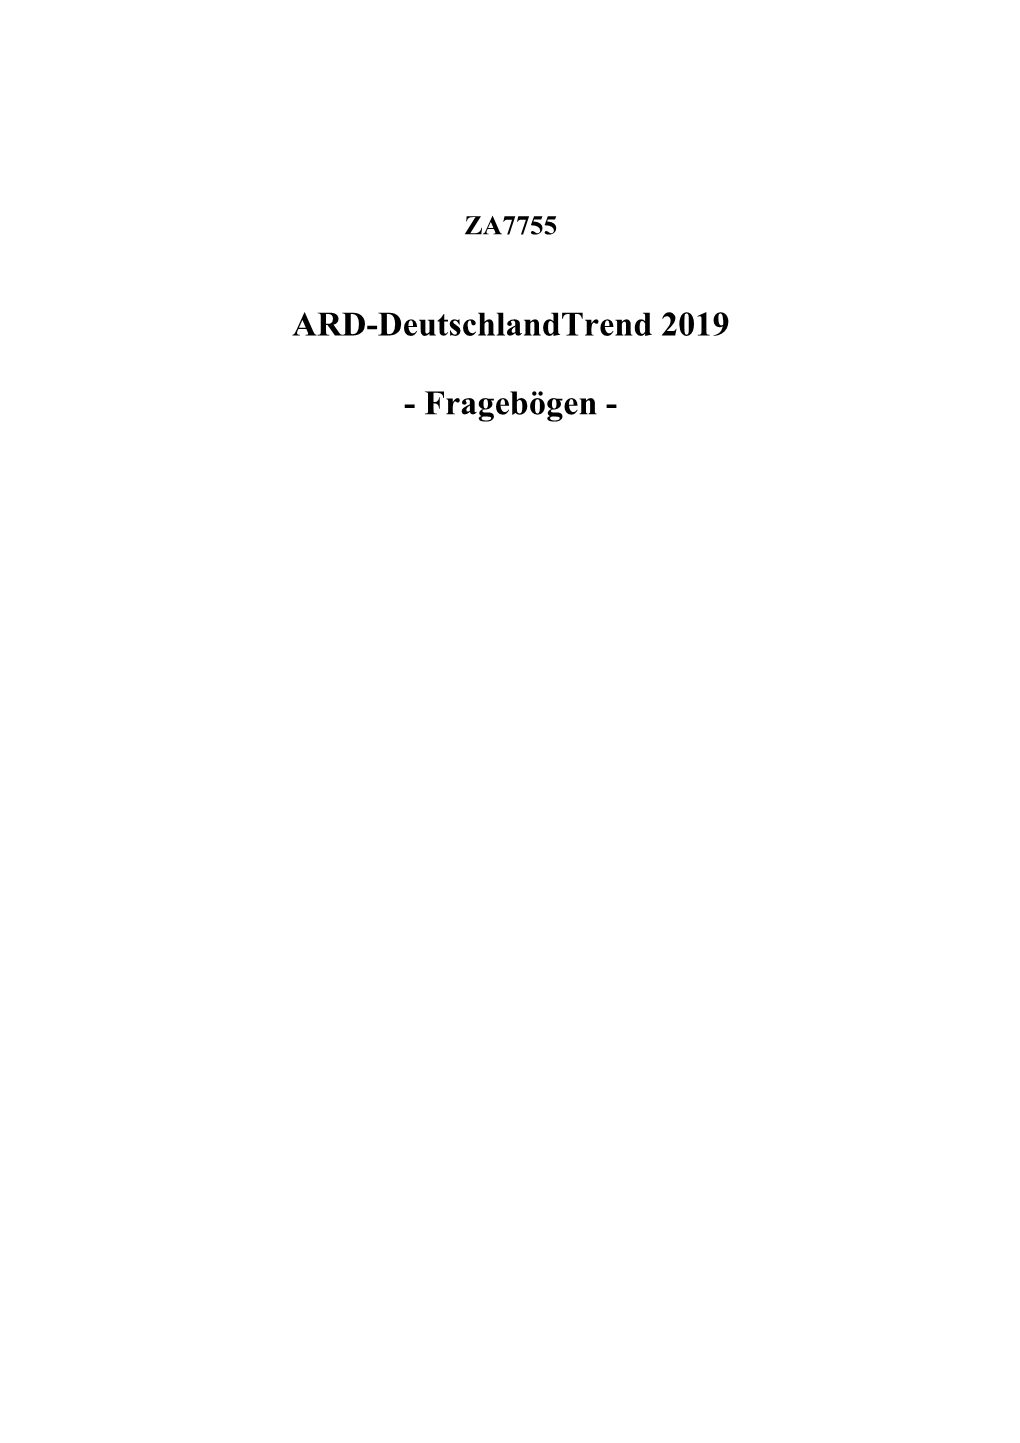 ARD-Deutschlandtrend 2019